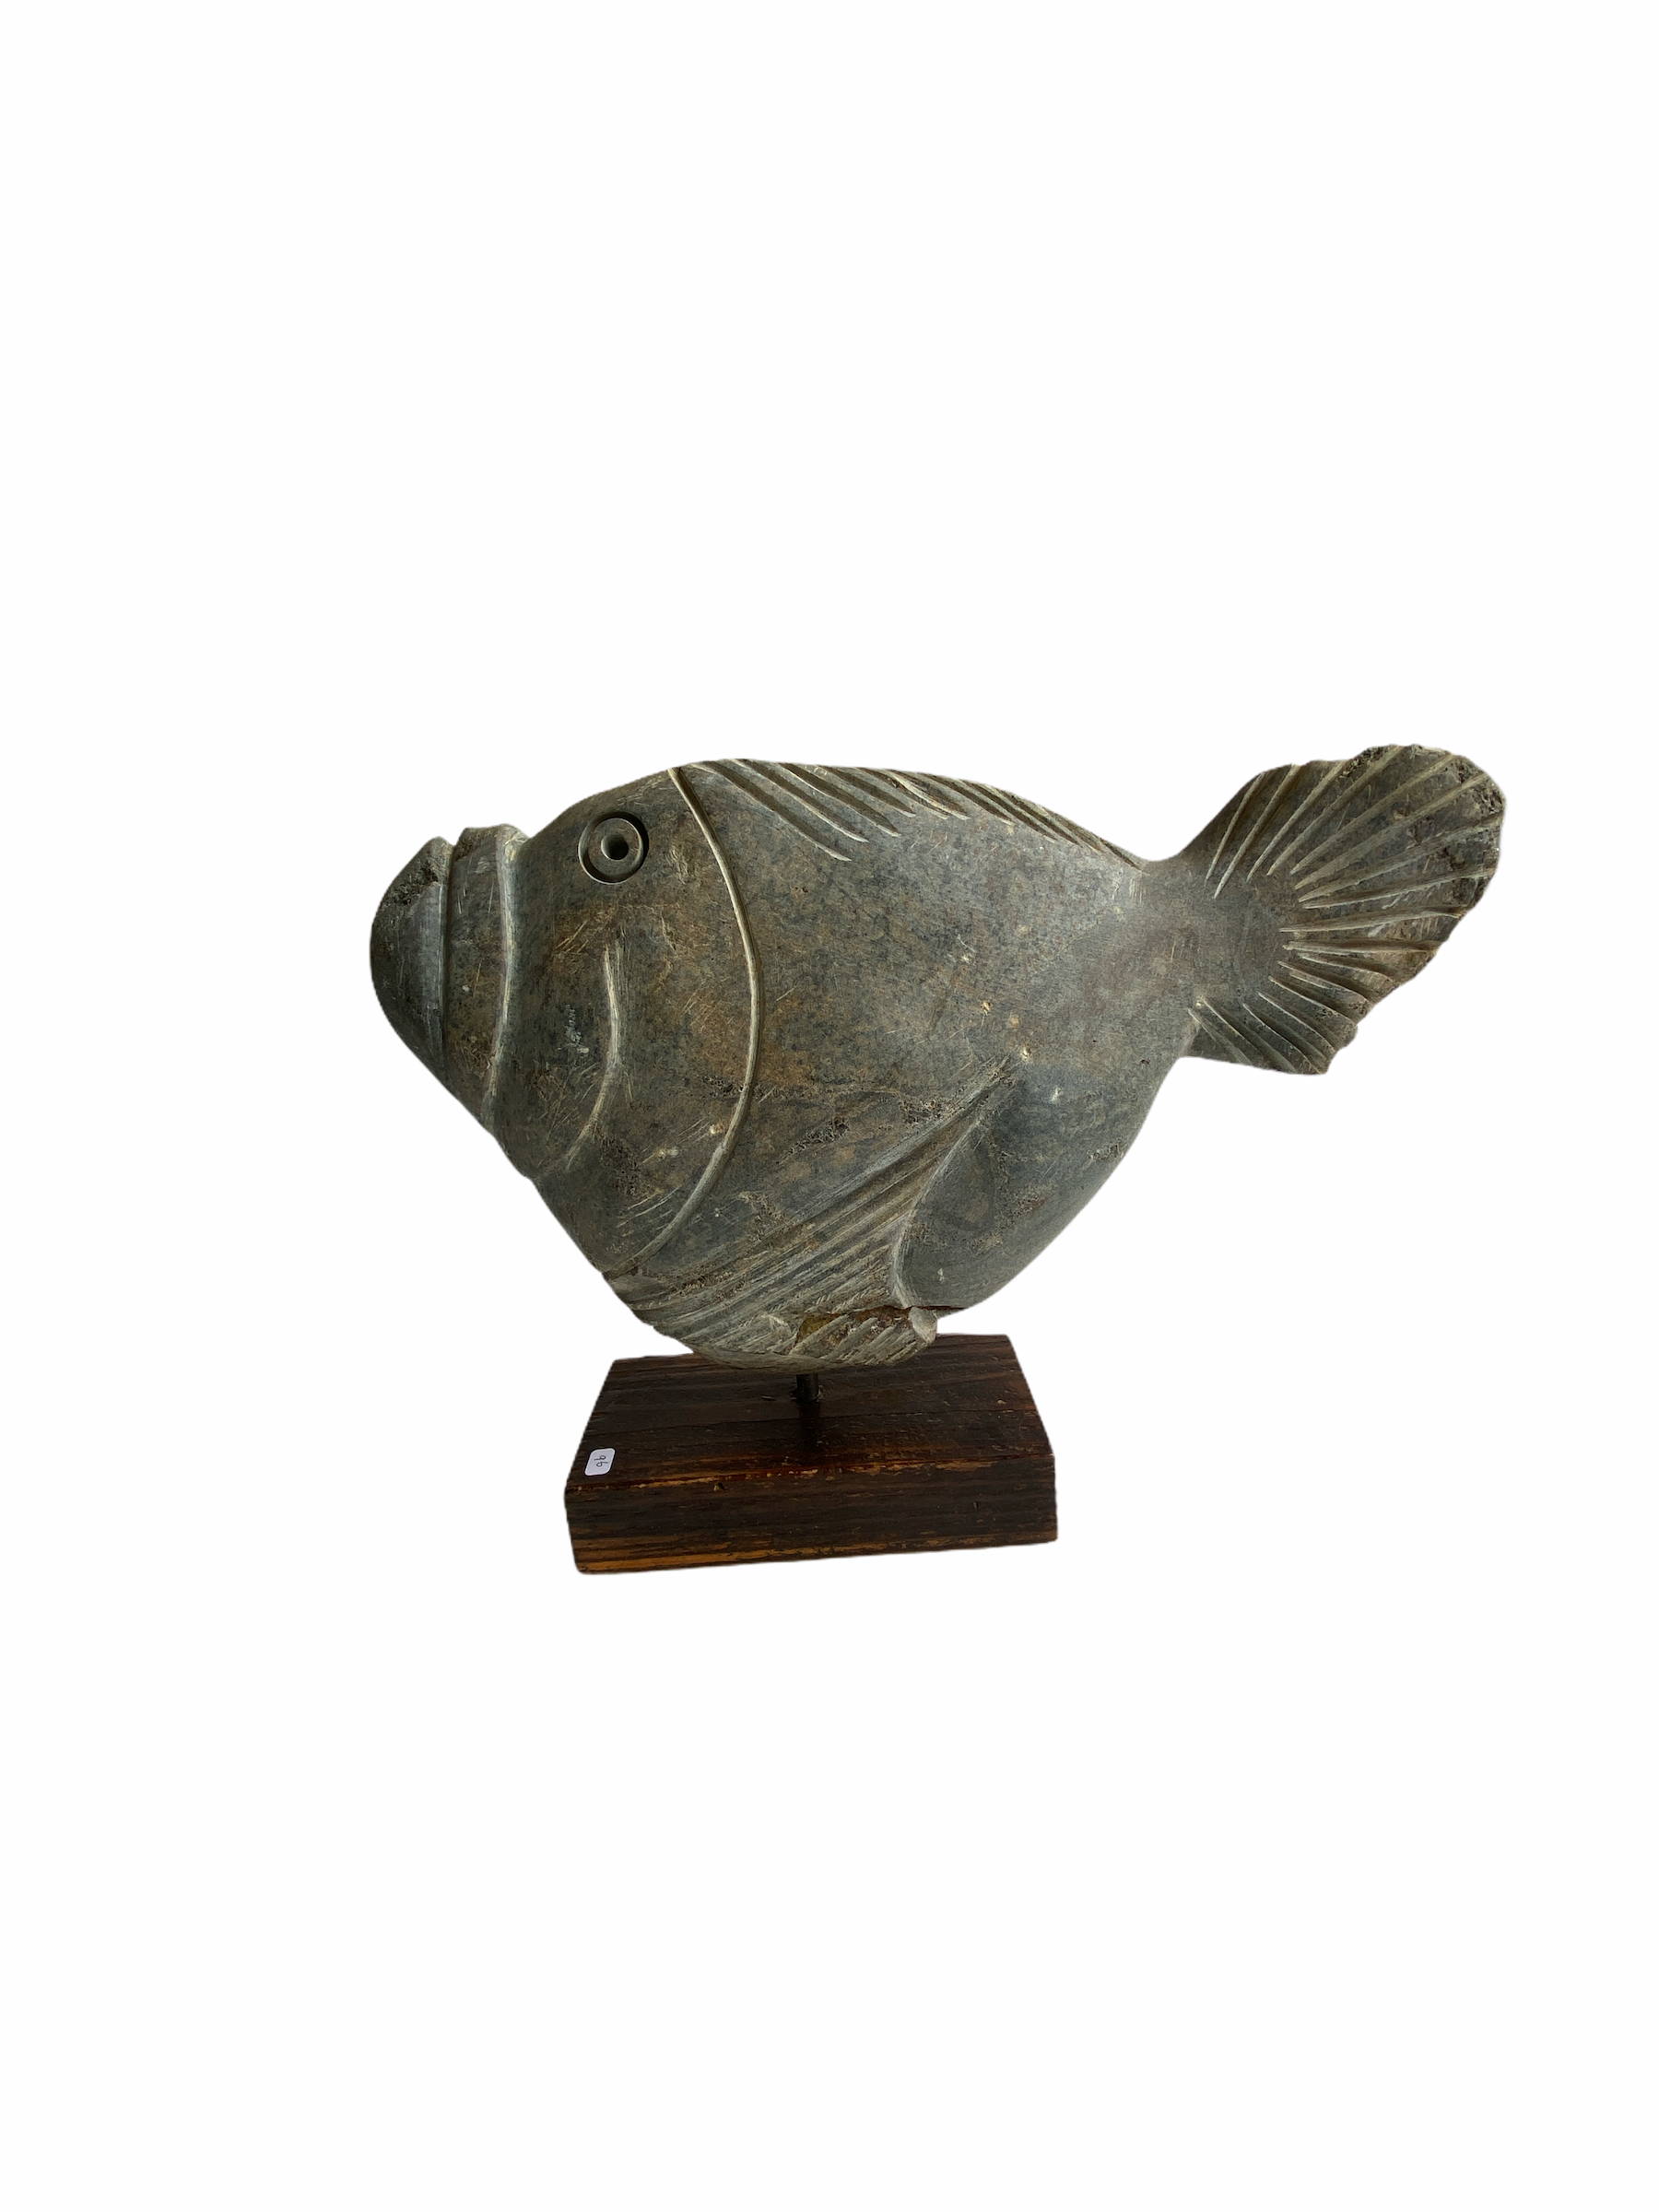 Stone Fish Sculpture - Zimbabwe (07)